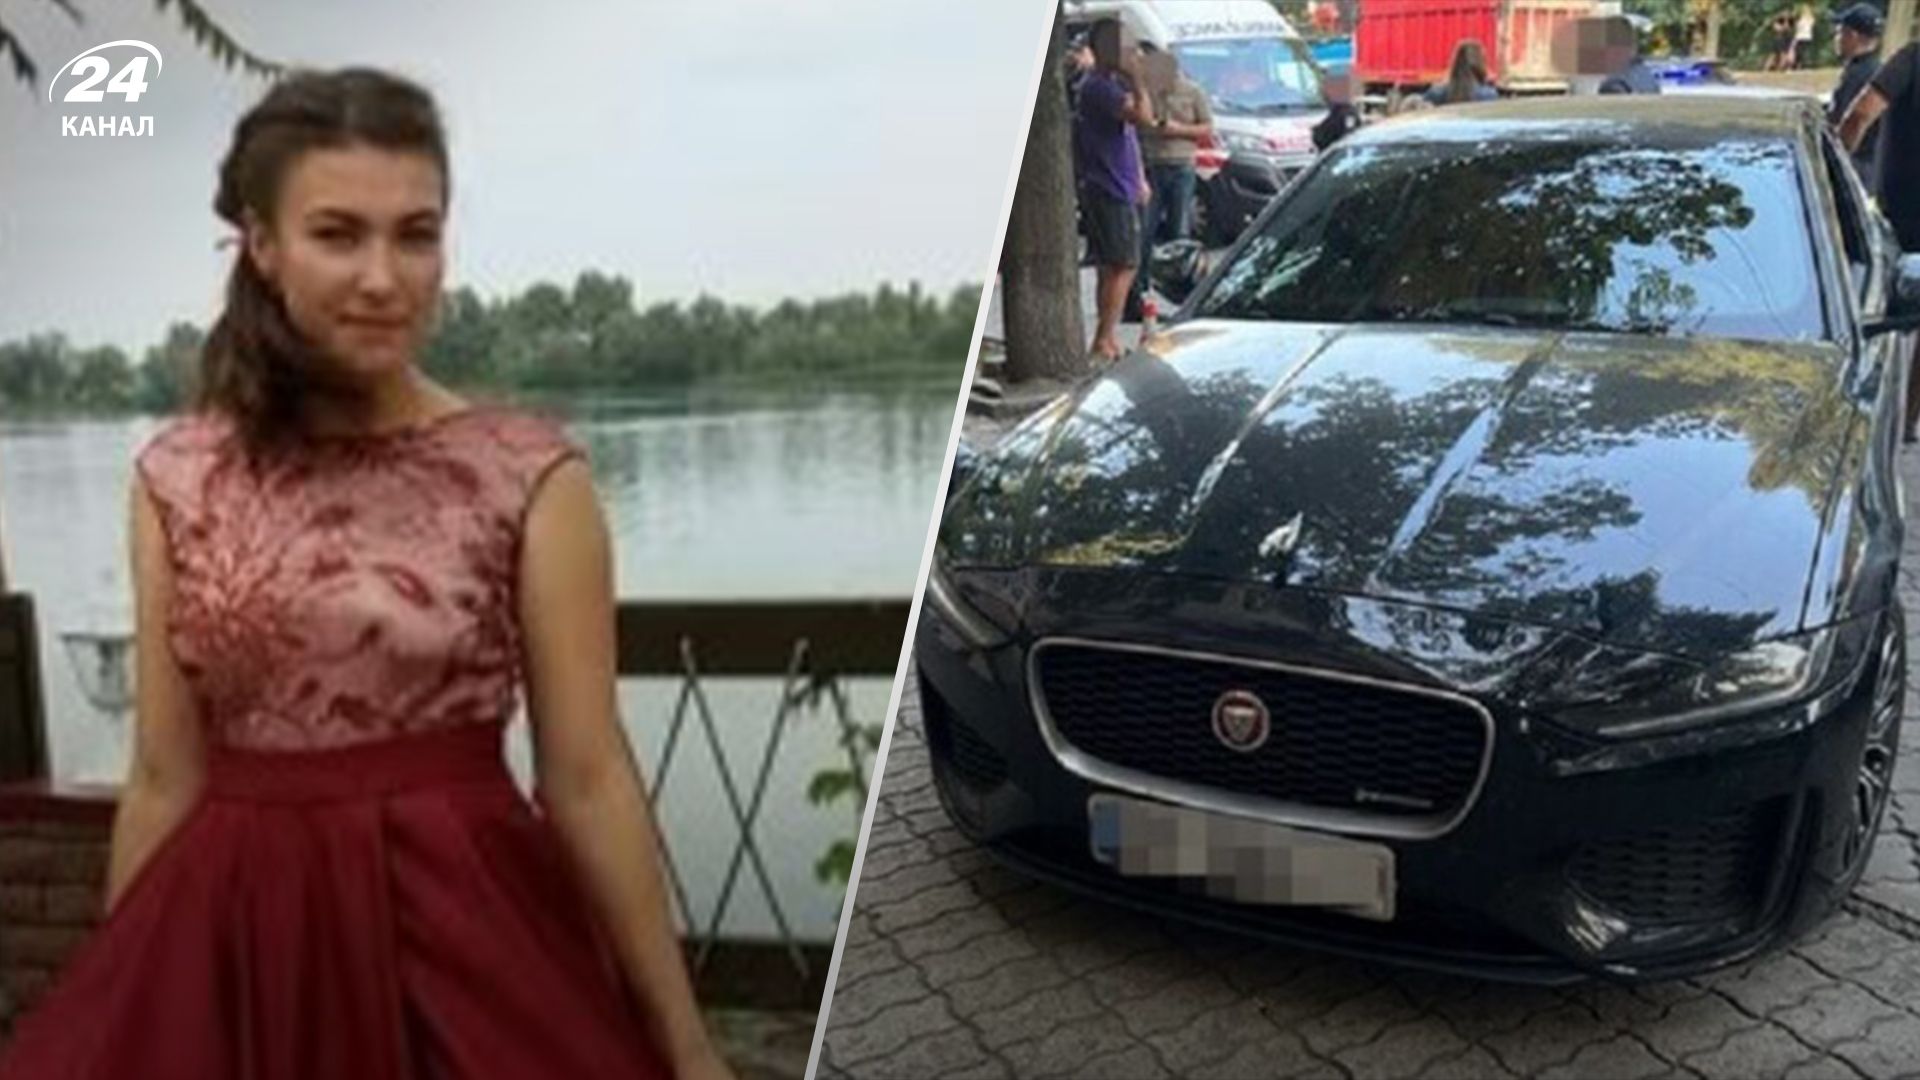 СМИ выяснили, что за женщина сидела машине перед стрельбой в Днепре